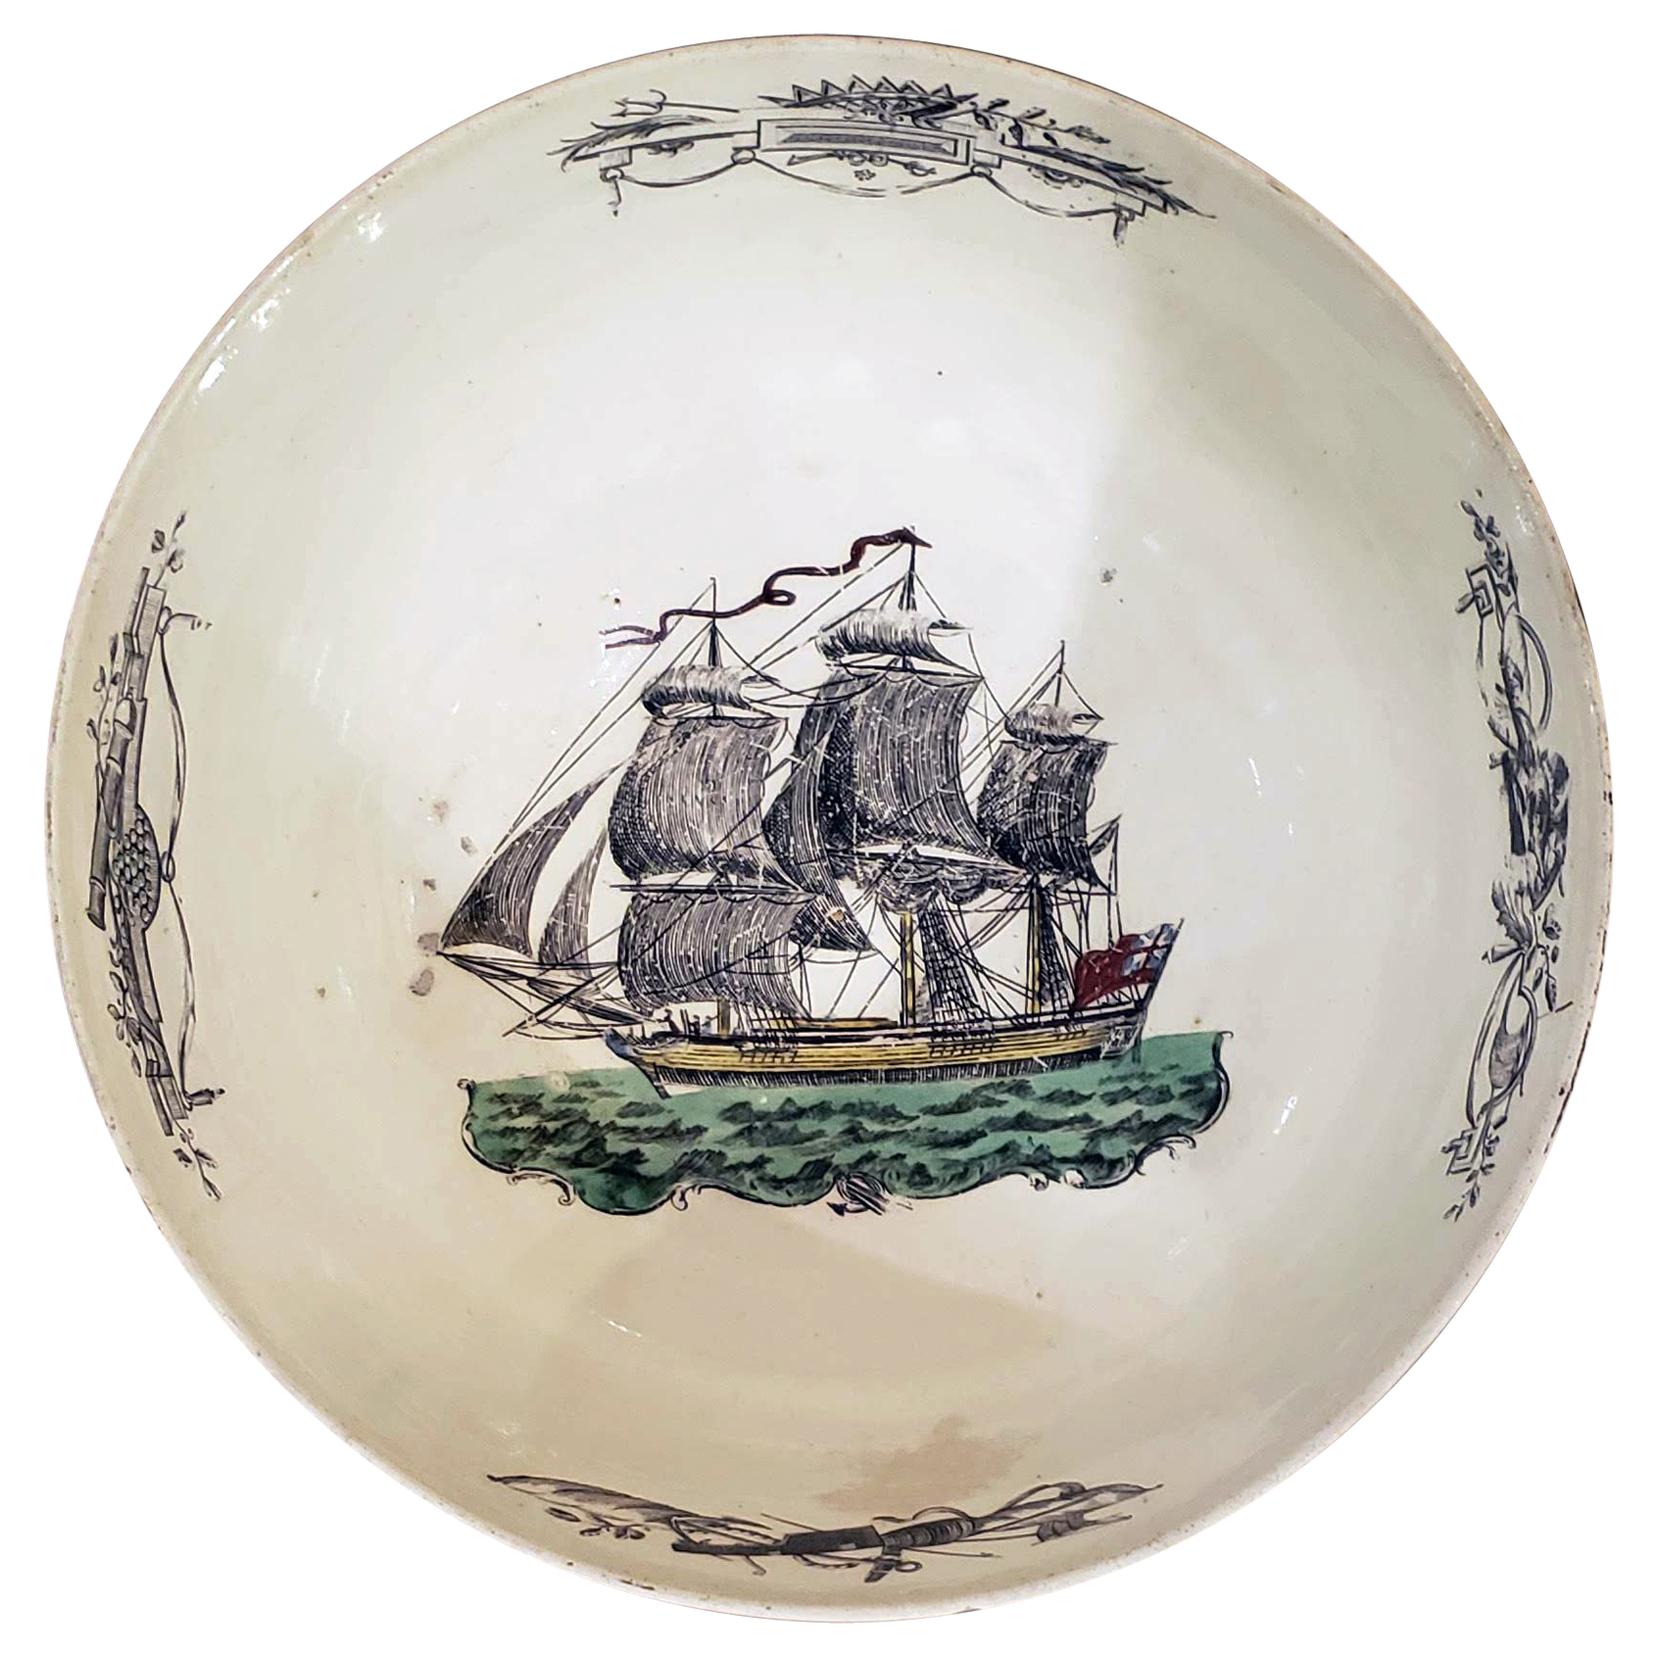 English Pottery Creamware Bowl with Design of Ship, circa 1785-1800